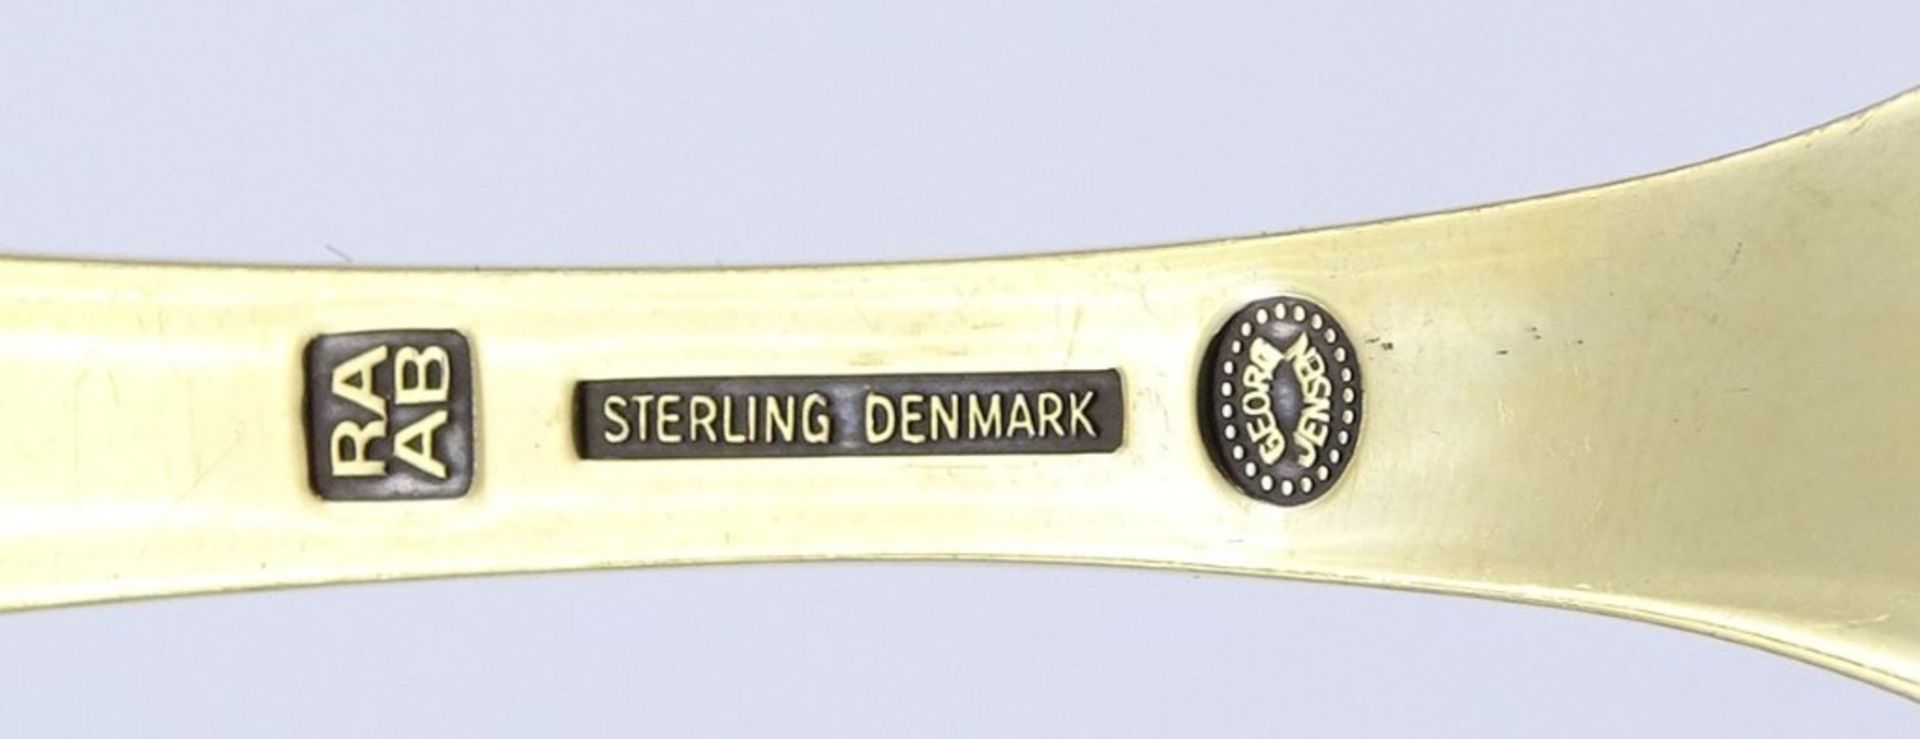 Jahreslöffel 1974 "Georg Jensen" Dänemark,Sterling Silber 0.925 - vergoldet, 44,8g., in Schachtel- - Bild 6 aus 6